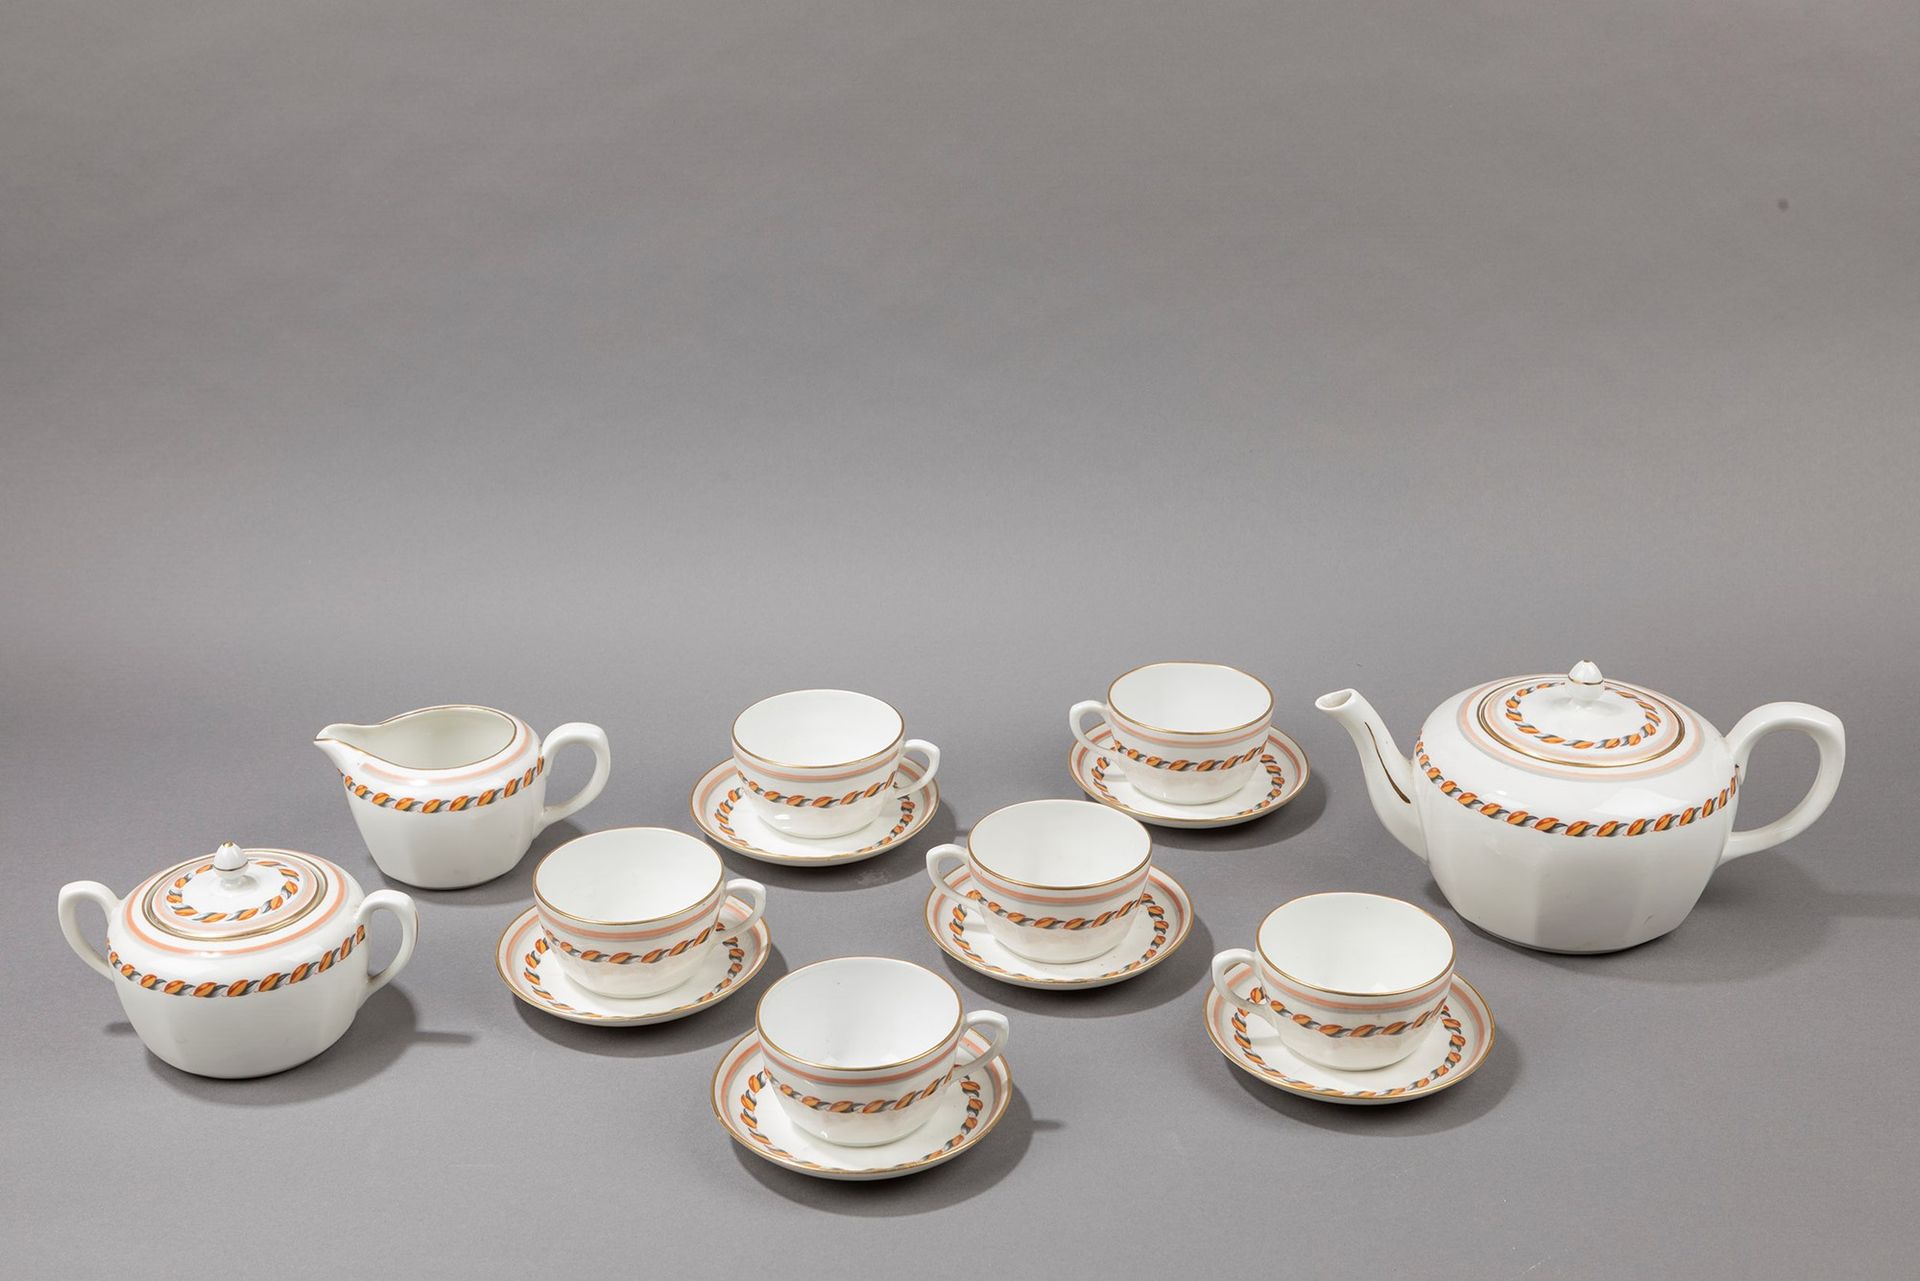 GIO PONTI Juego de té, ca. 1925.

Diferentes tamaños
compuesto por seis tazas, s&hellip;